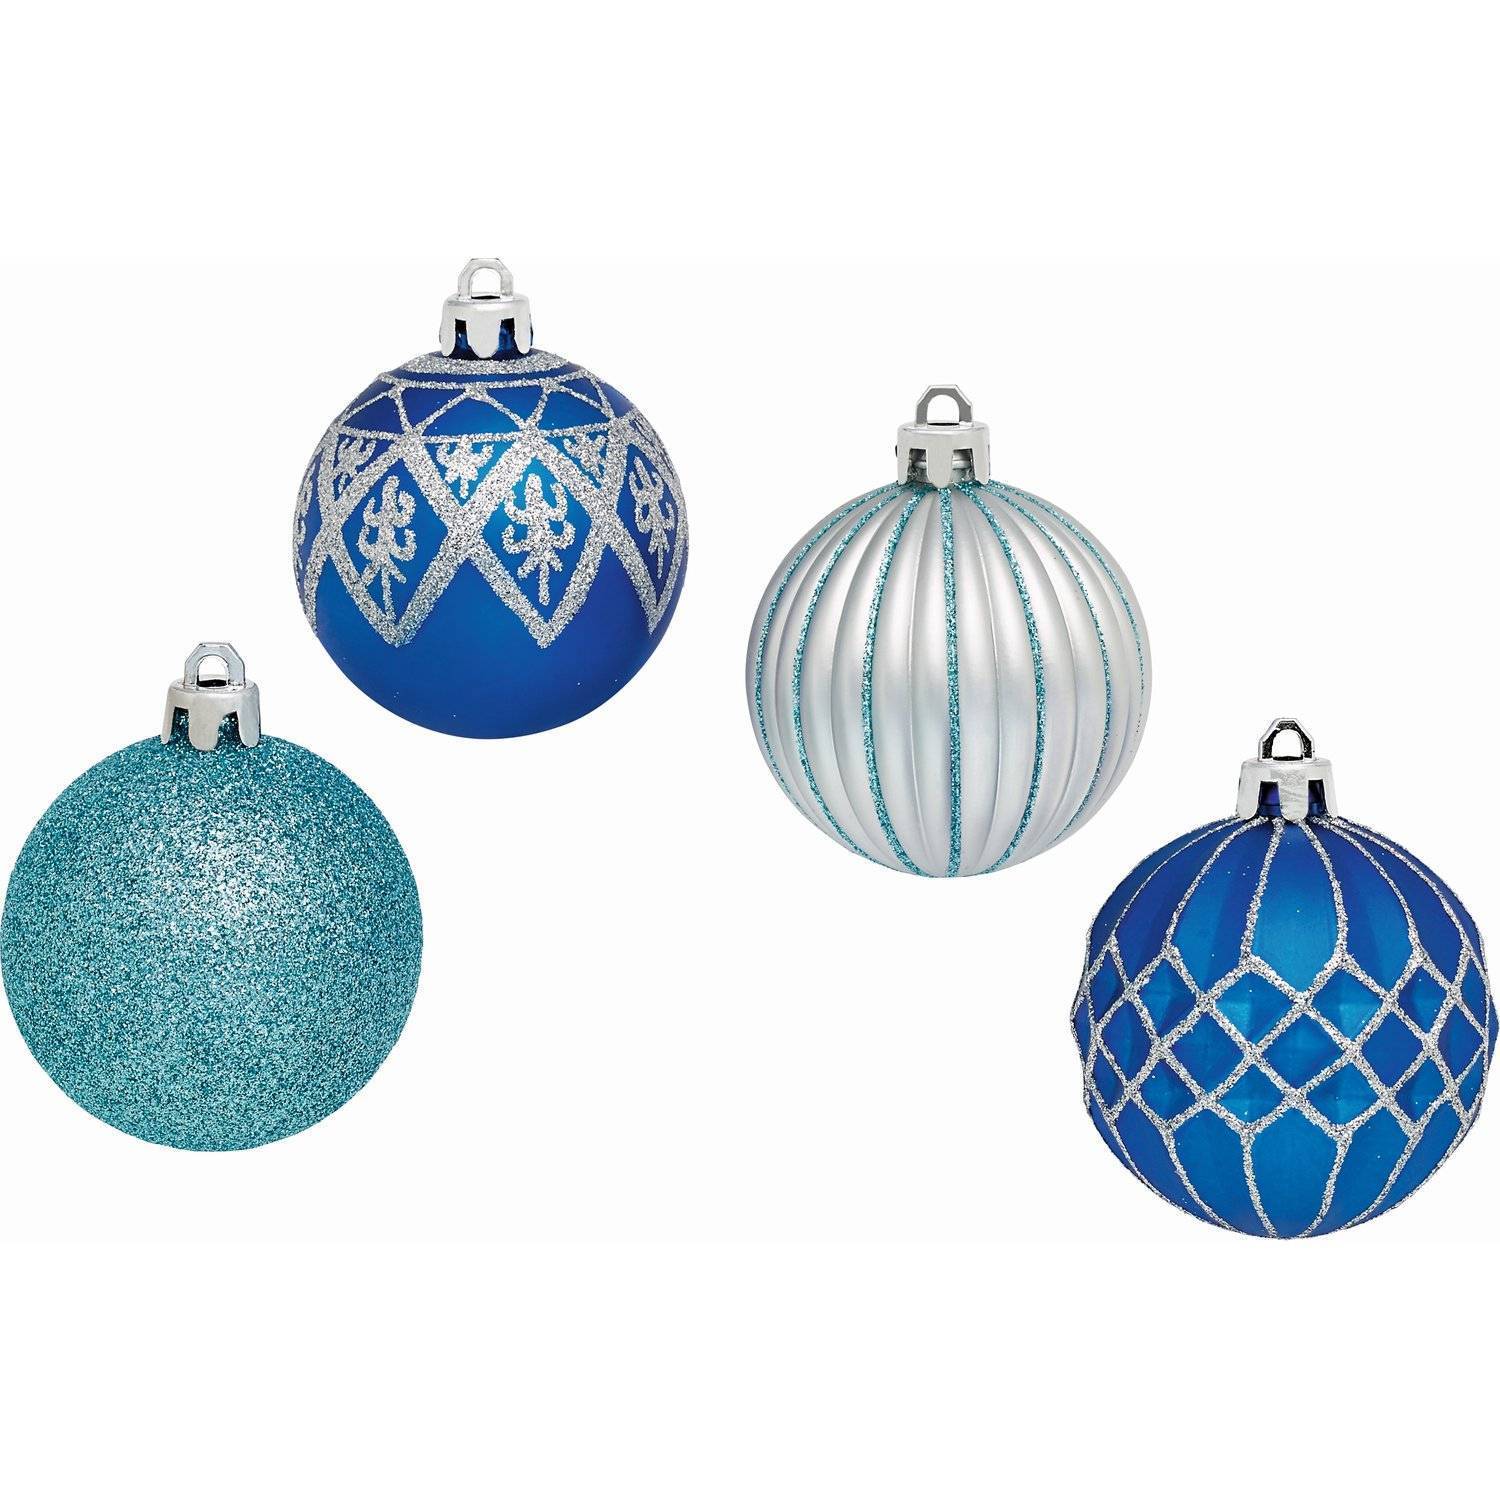 Синие шары на елку. Шар новогодний 6см 6шт снежно голубой mer9231-sq025 retal. Синие елочные шары. Новогодний шар (синий). Елочные игрушки синие.